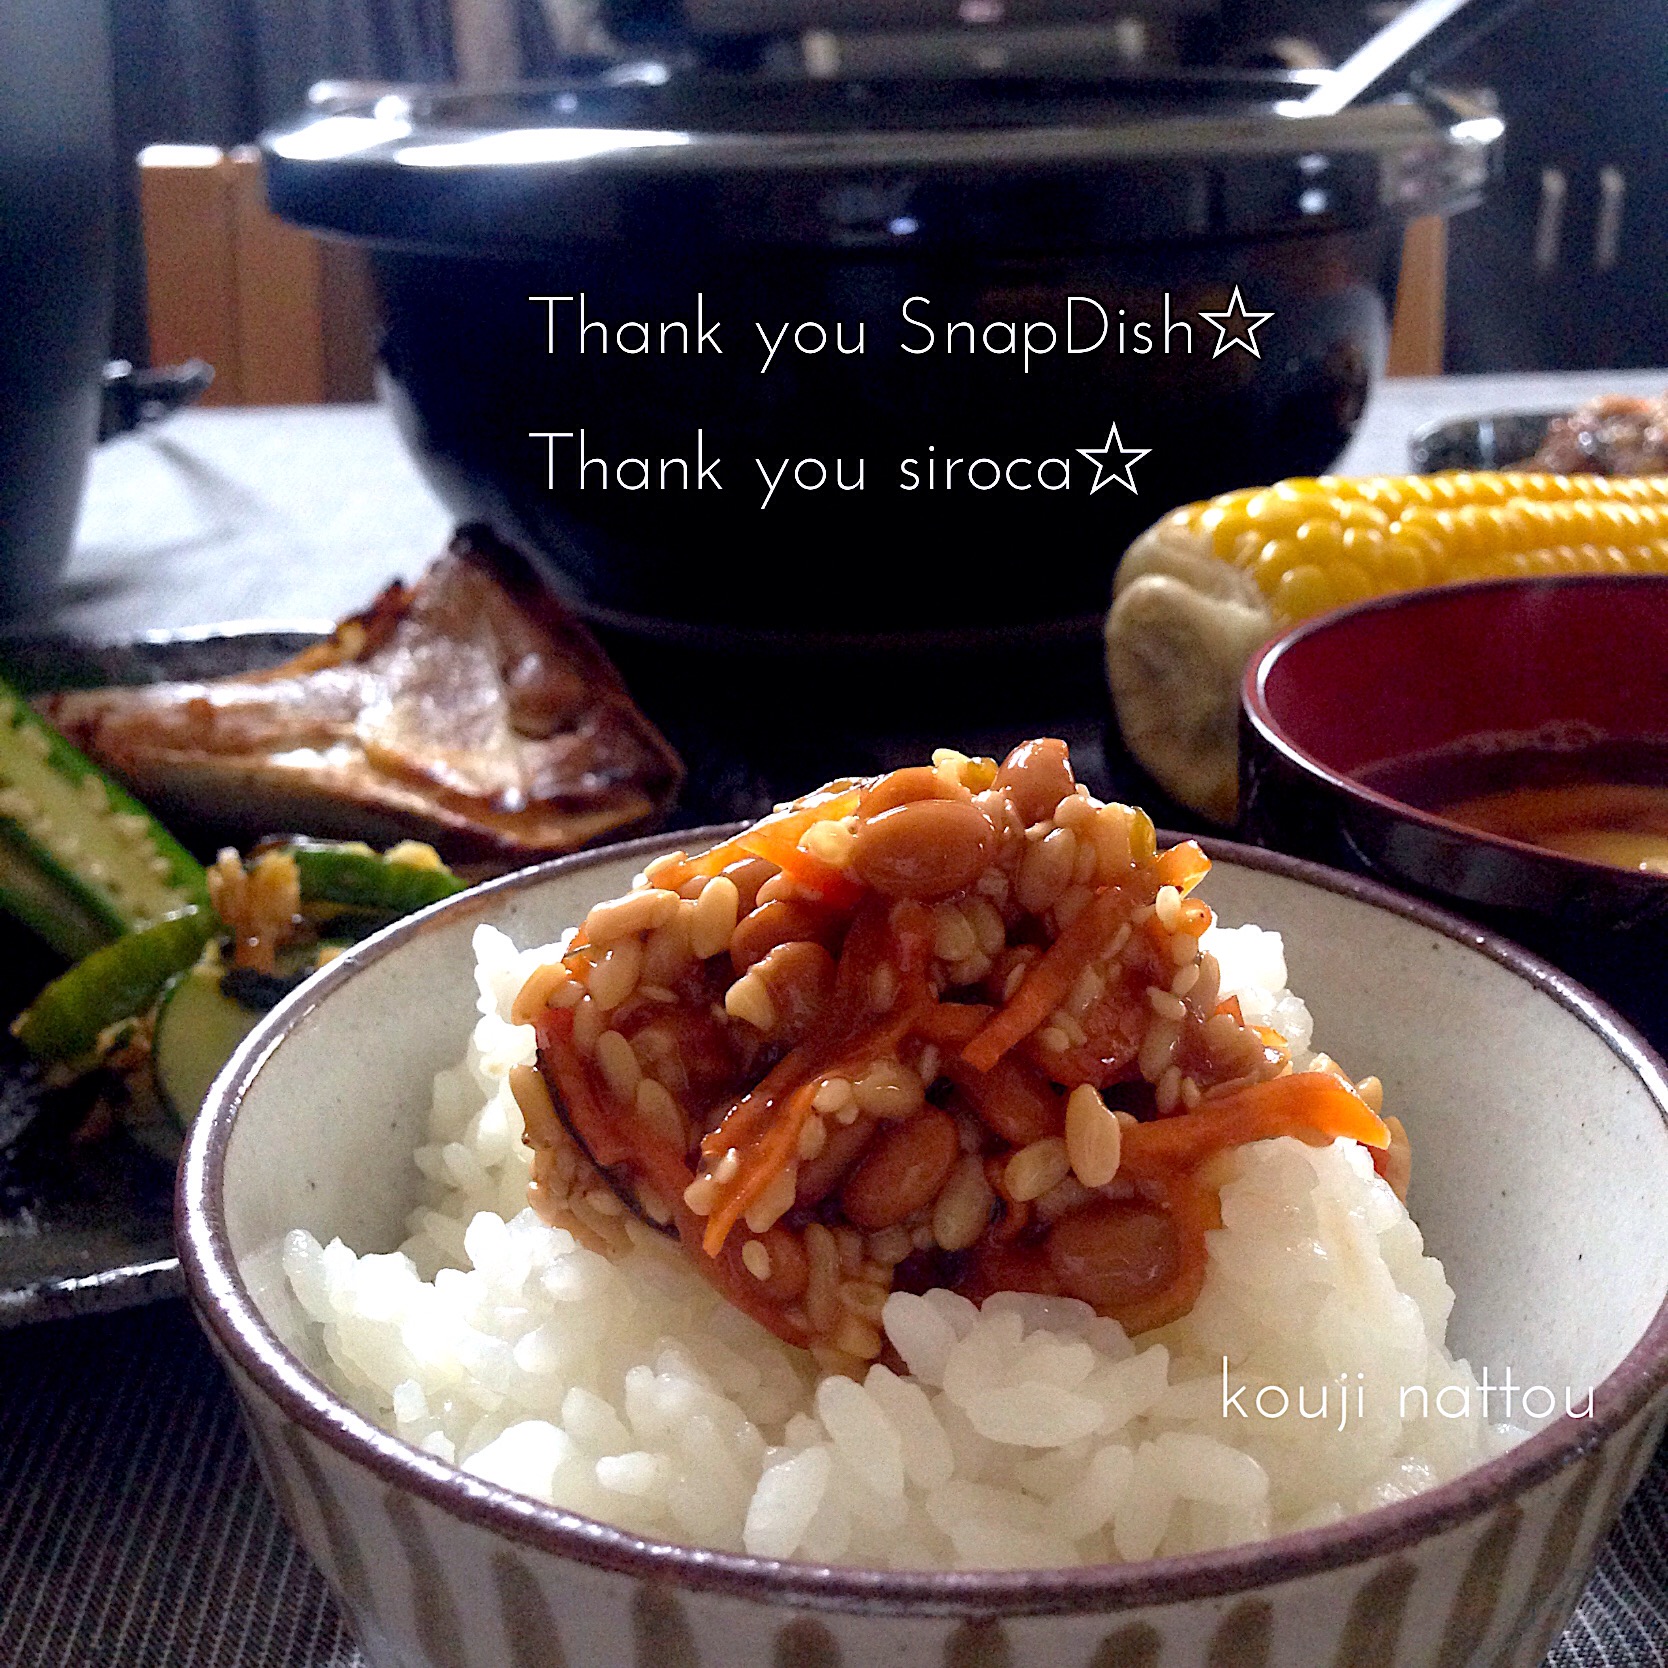 「かまどさん電気」で炊いたごはんにお米の友、麹納豆☆    #snapdishさんありがとう  #シロカさんありがとう